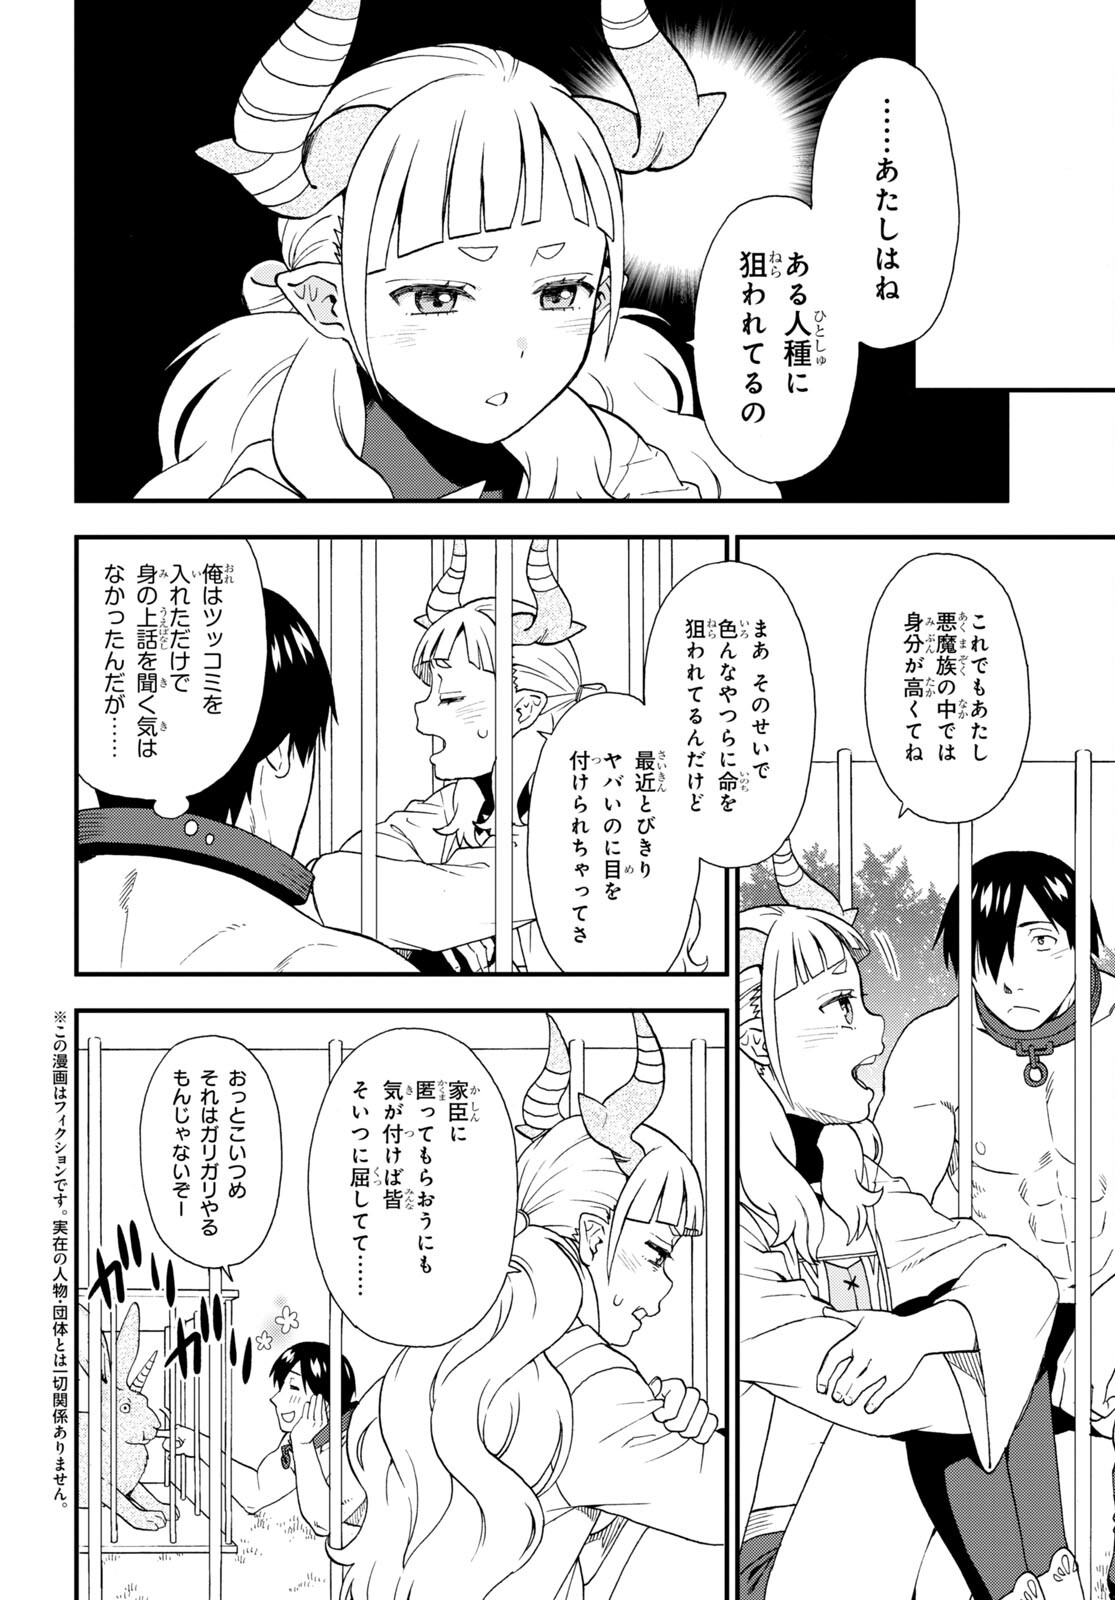 Kemono Michi - Chapter 66 - Page 2